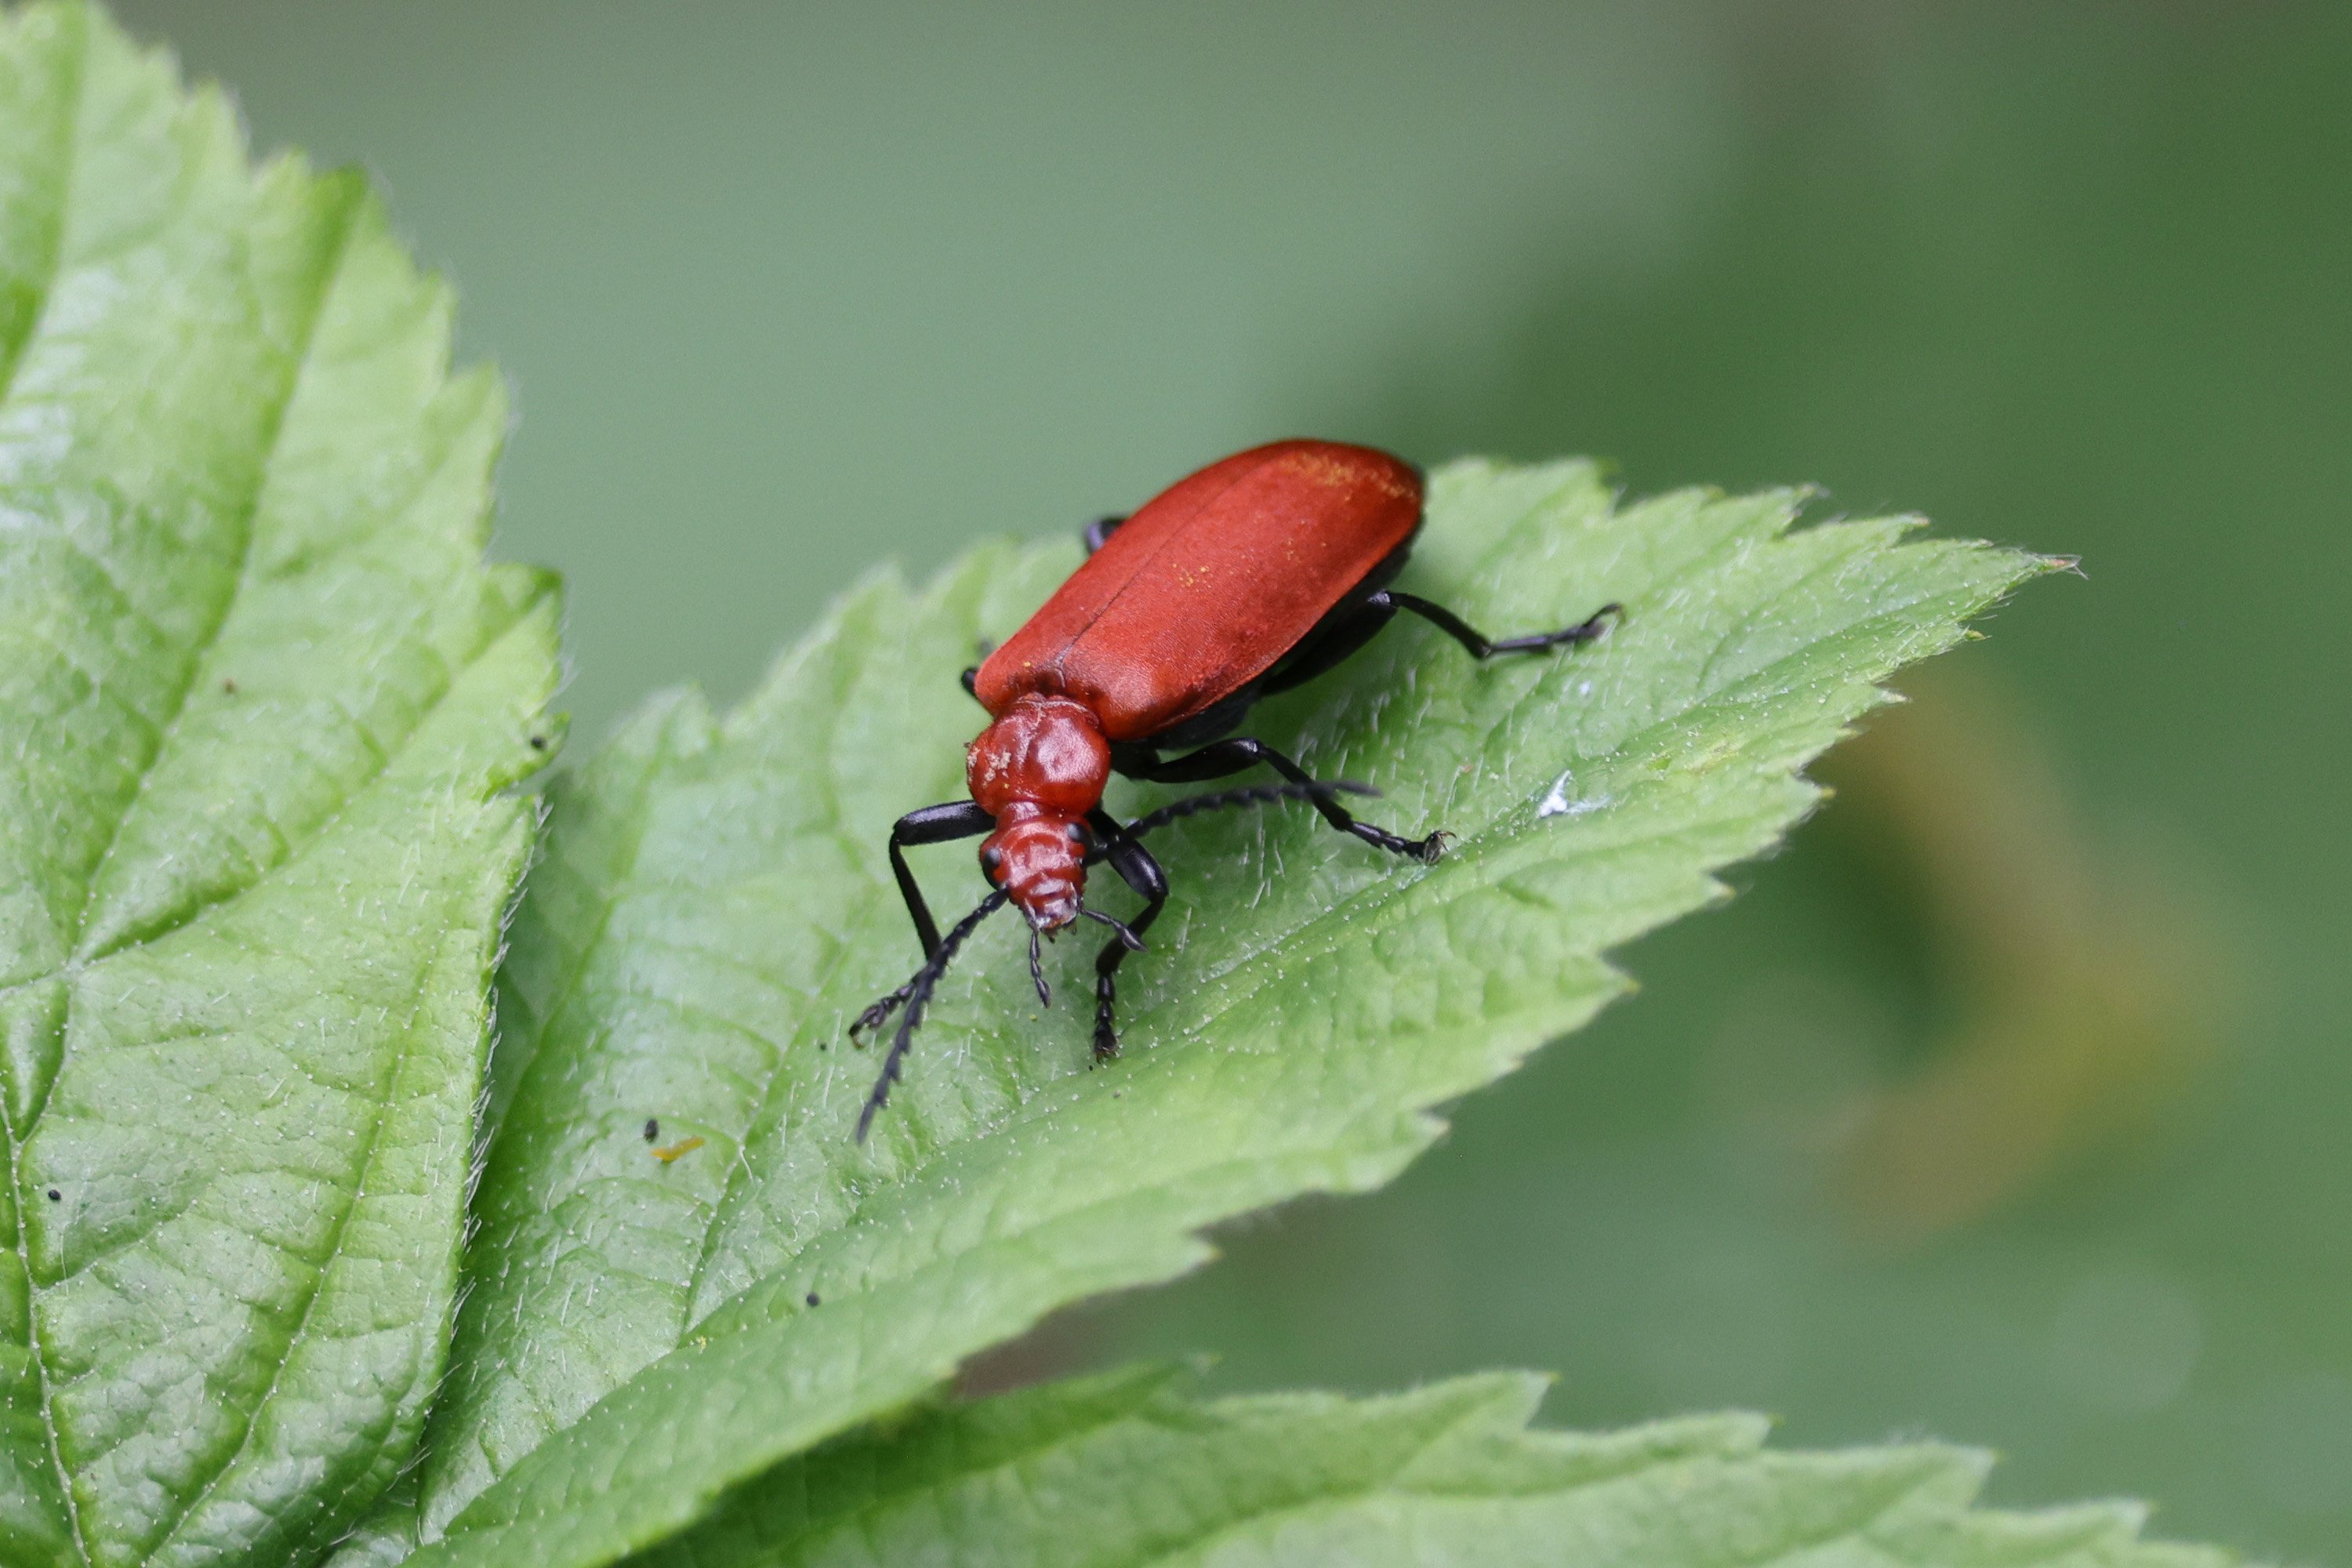 A Little Cardinal Beetle